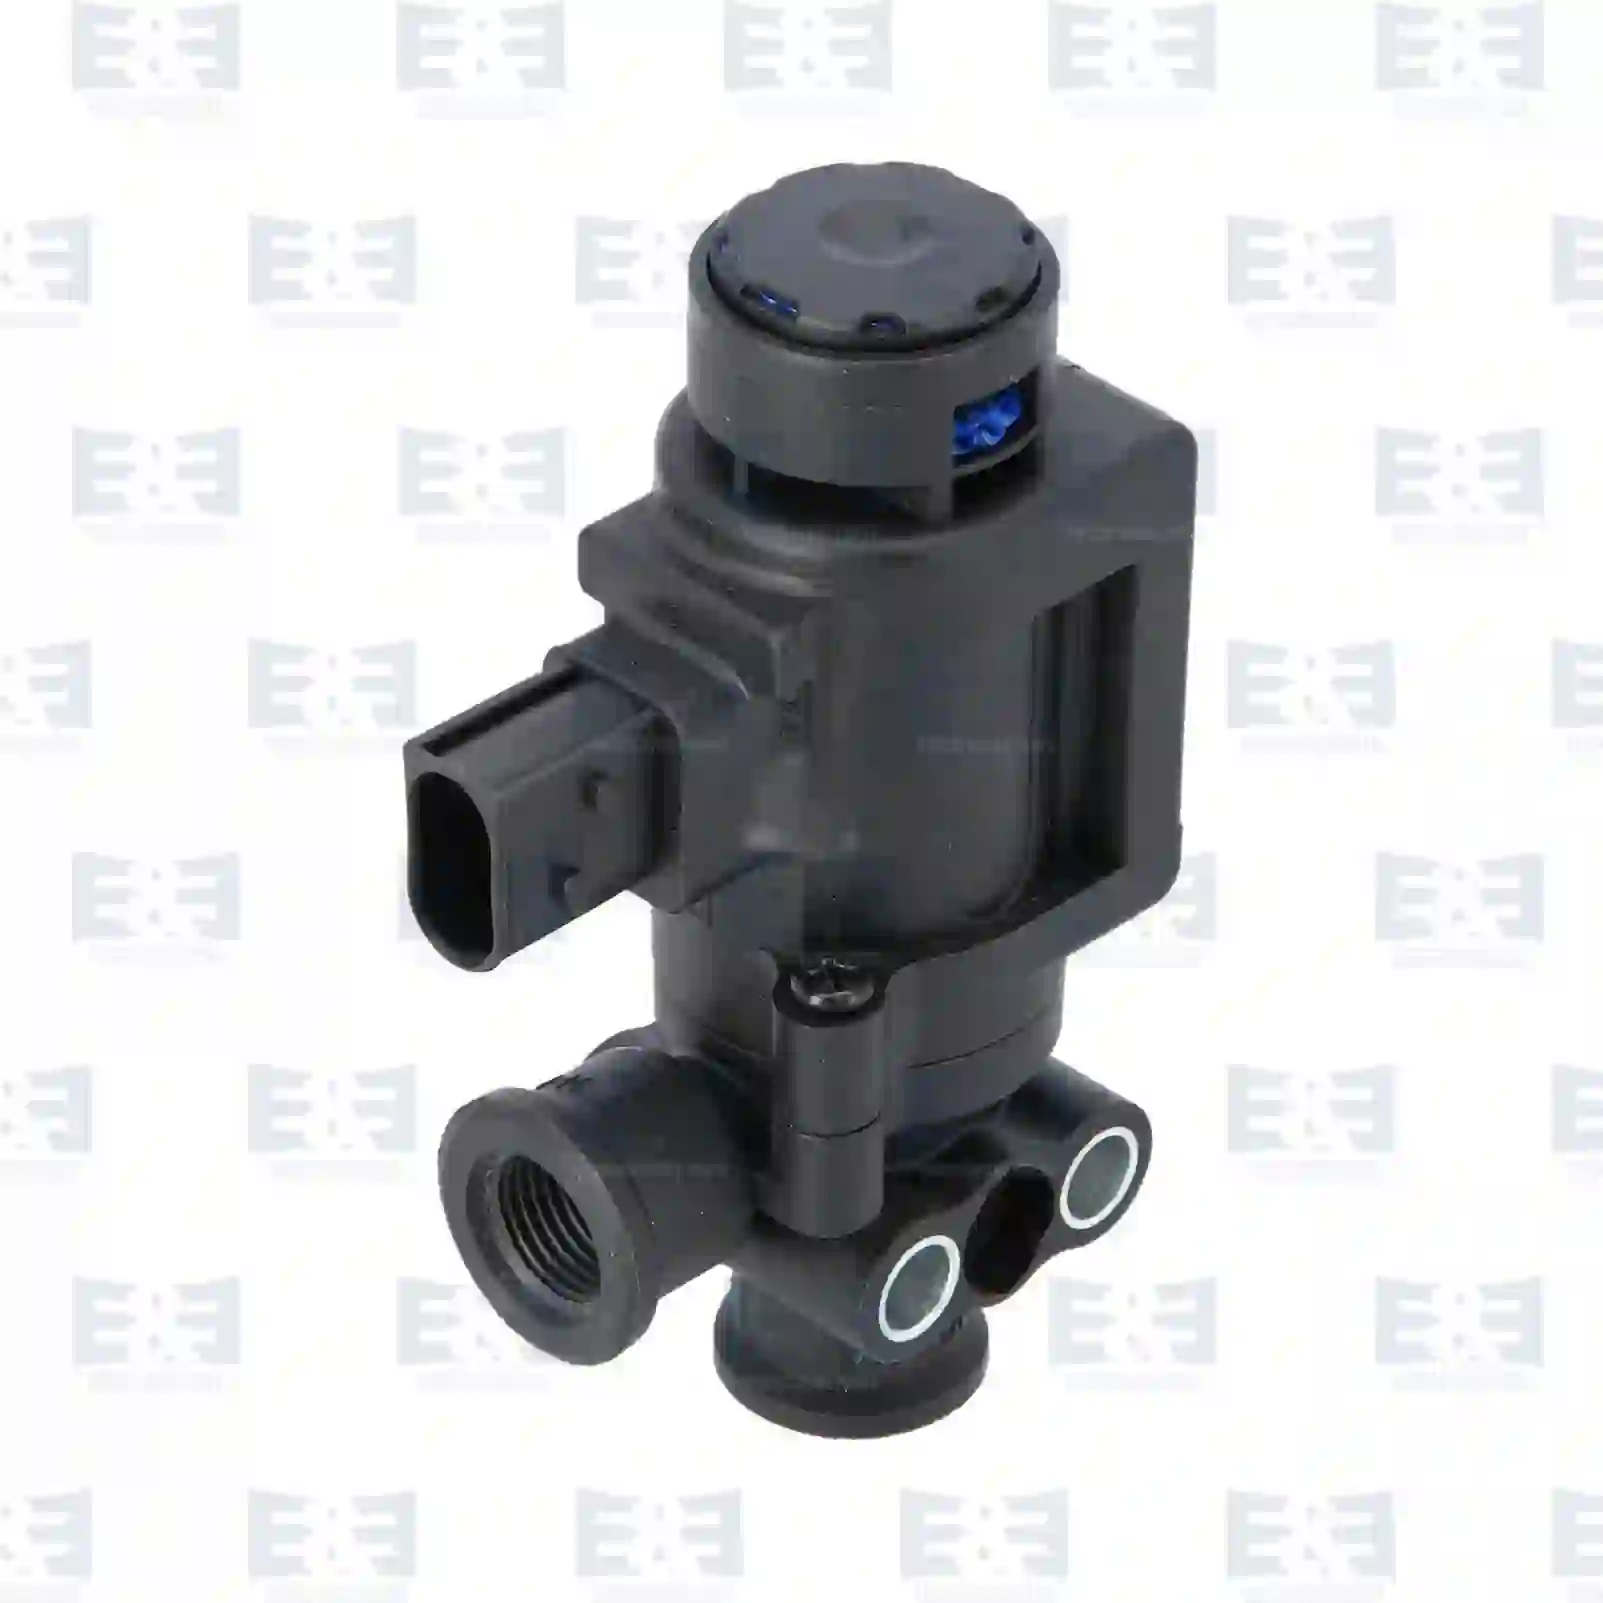  Solenoid valve || E&E Truck Spare Parts | Truck Spare Parts, Auotomotive Spare Parts